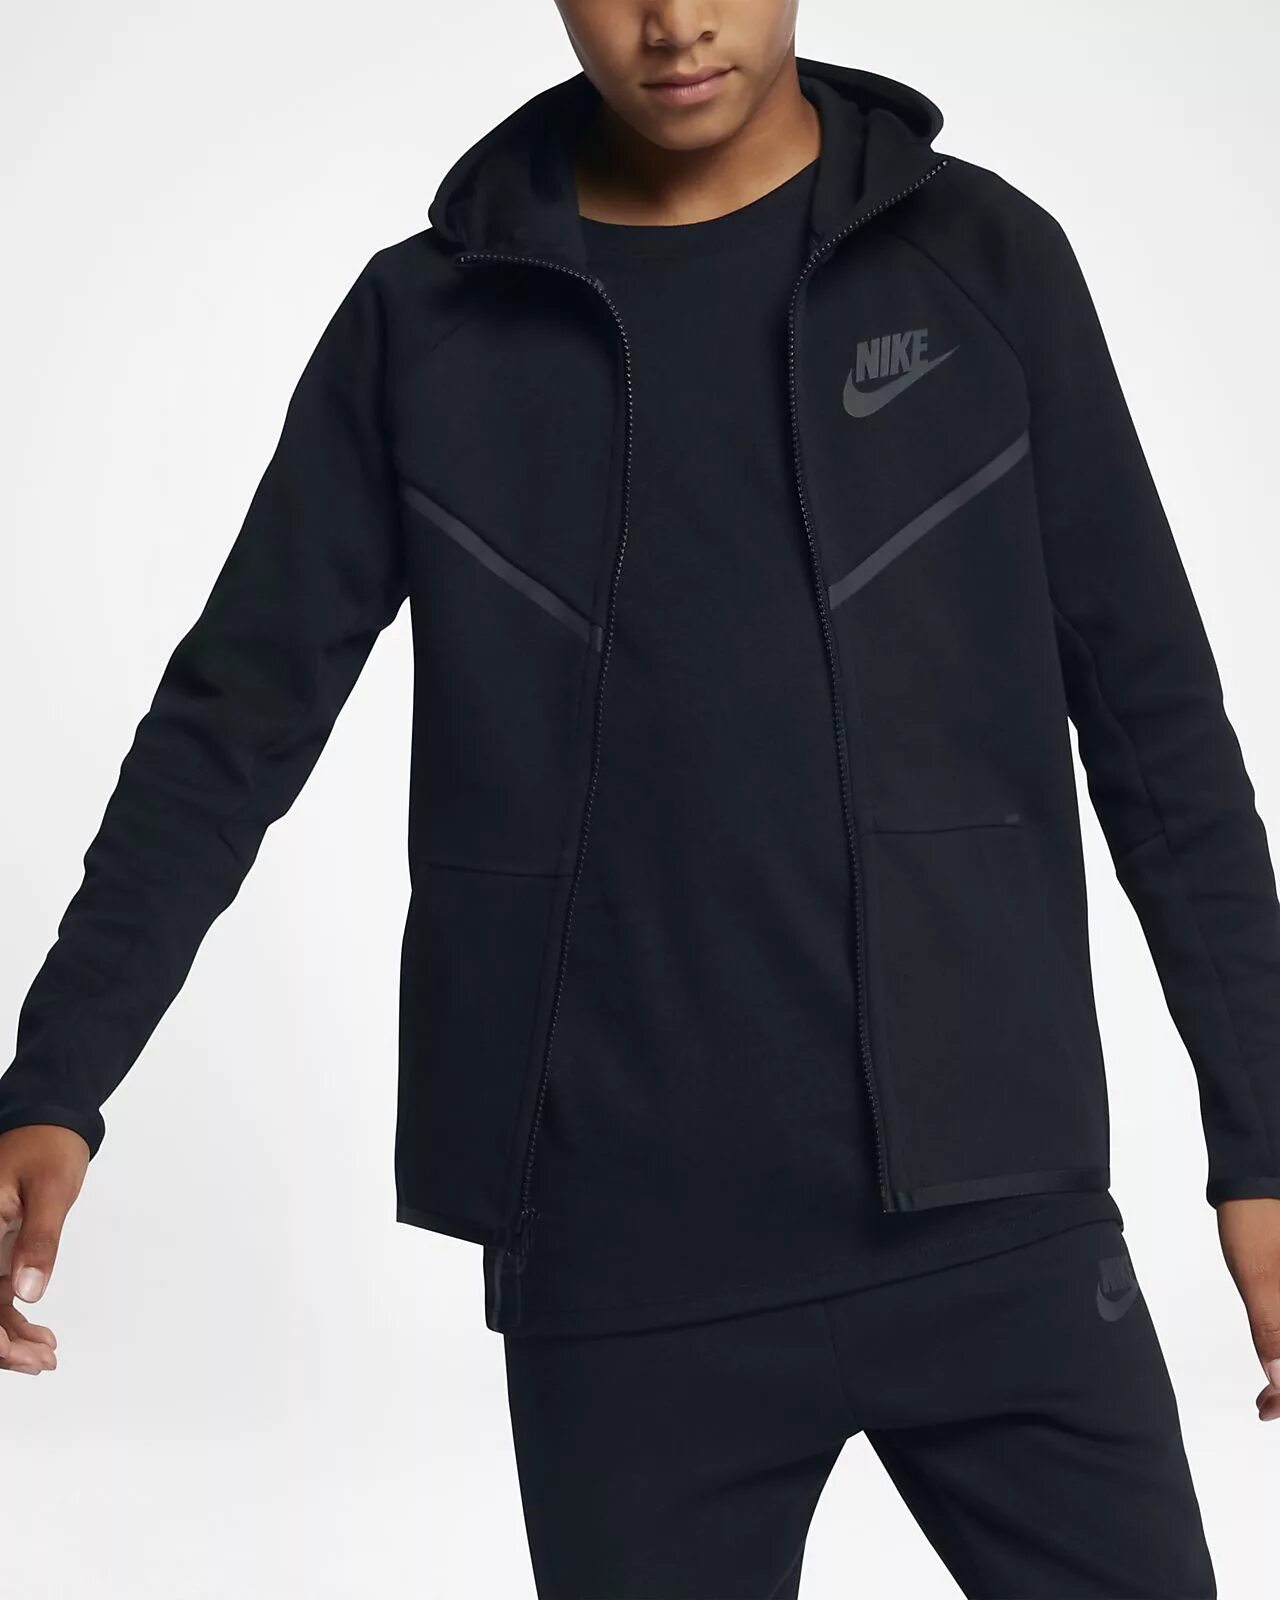 Nike Tech Fleece костюм. Nike Sportswear Tech Fleece Black. Nike Tech Fleece черный. Nike Tech Fleece Black костюм.